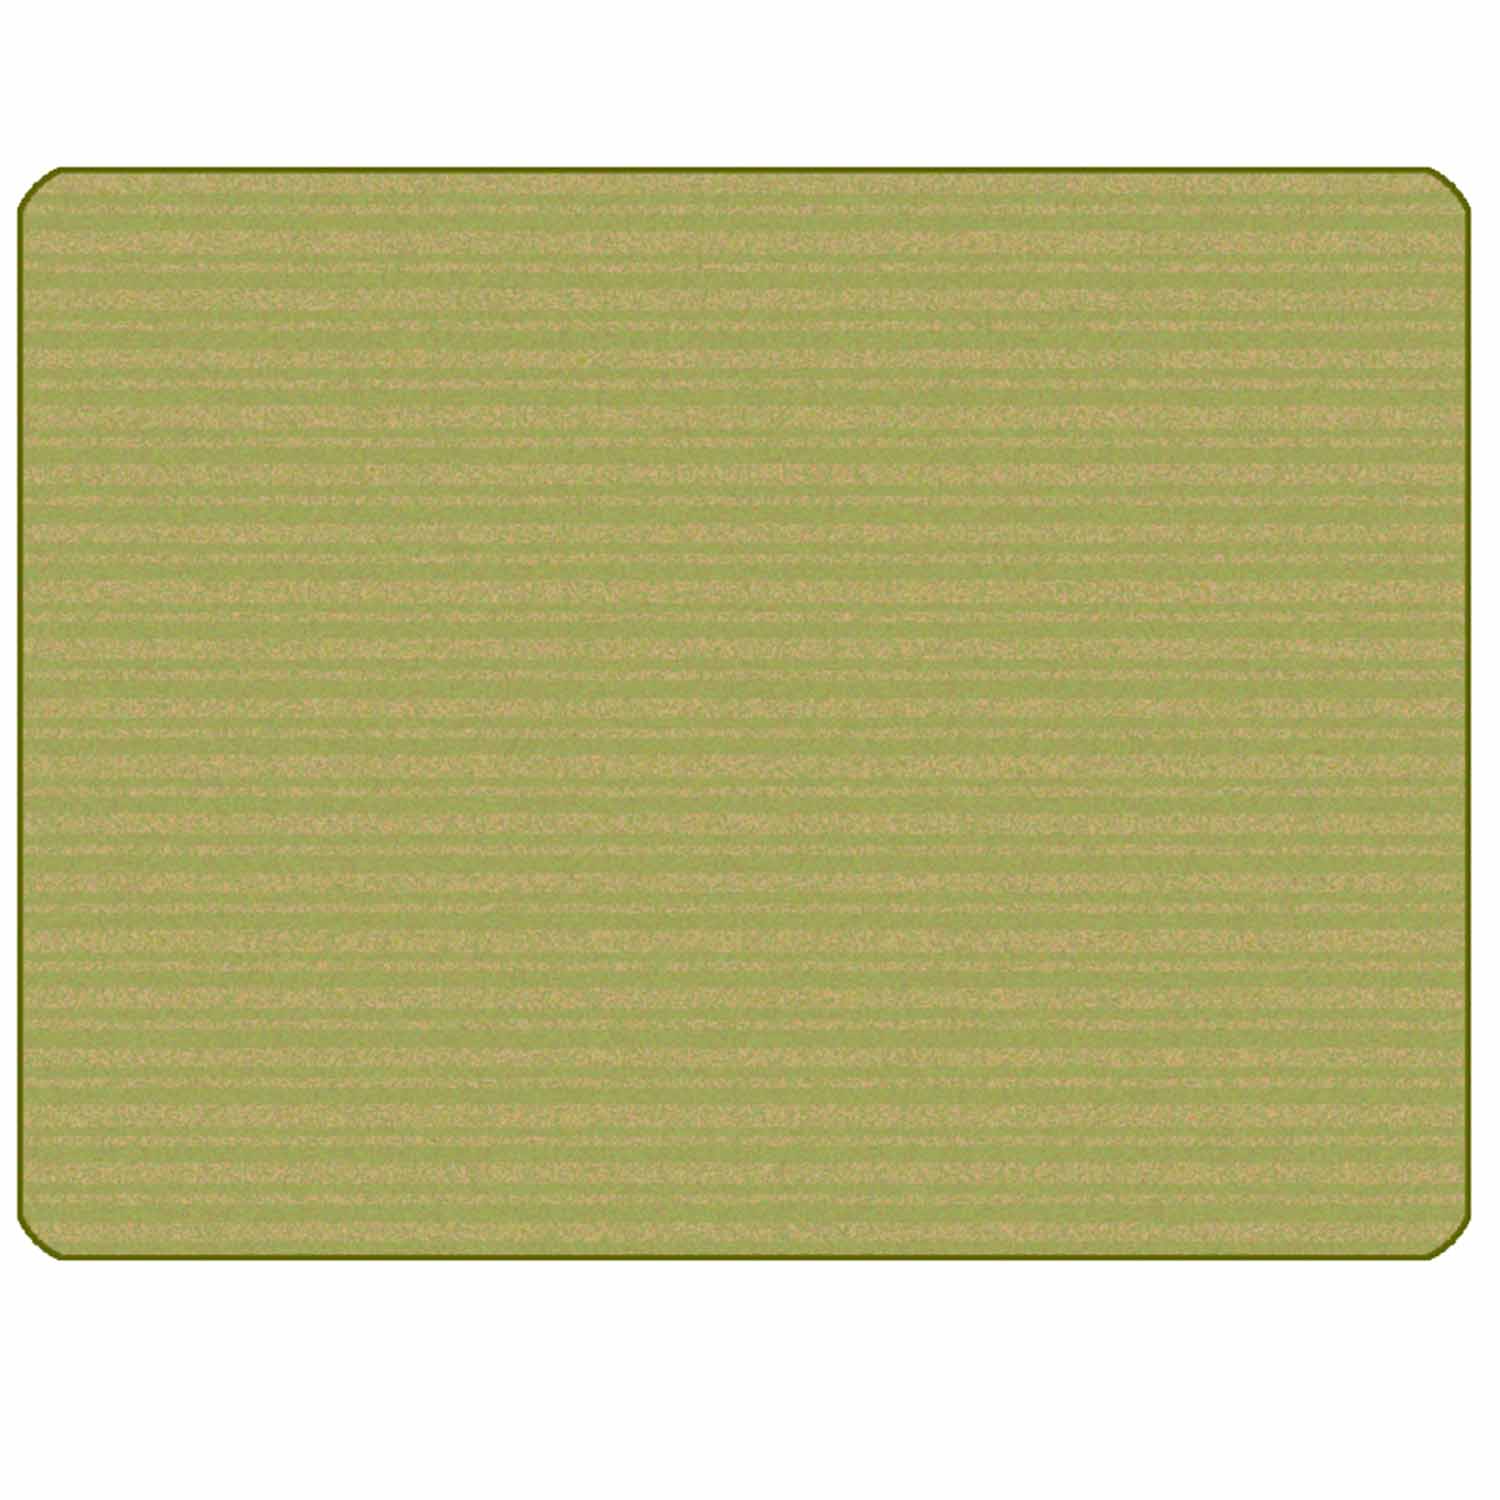 KIDSoft Subtle Stripes Rug Green Tan 6' x 9'